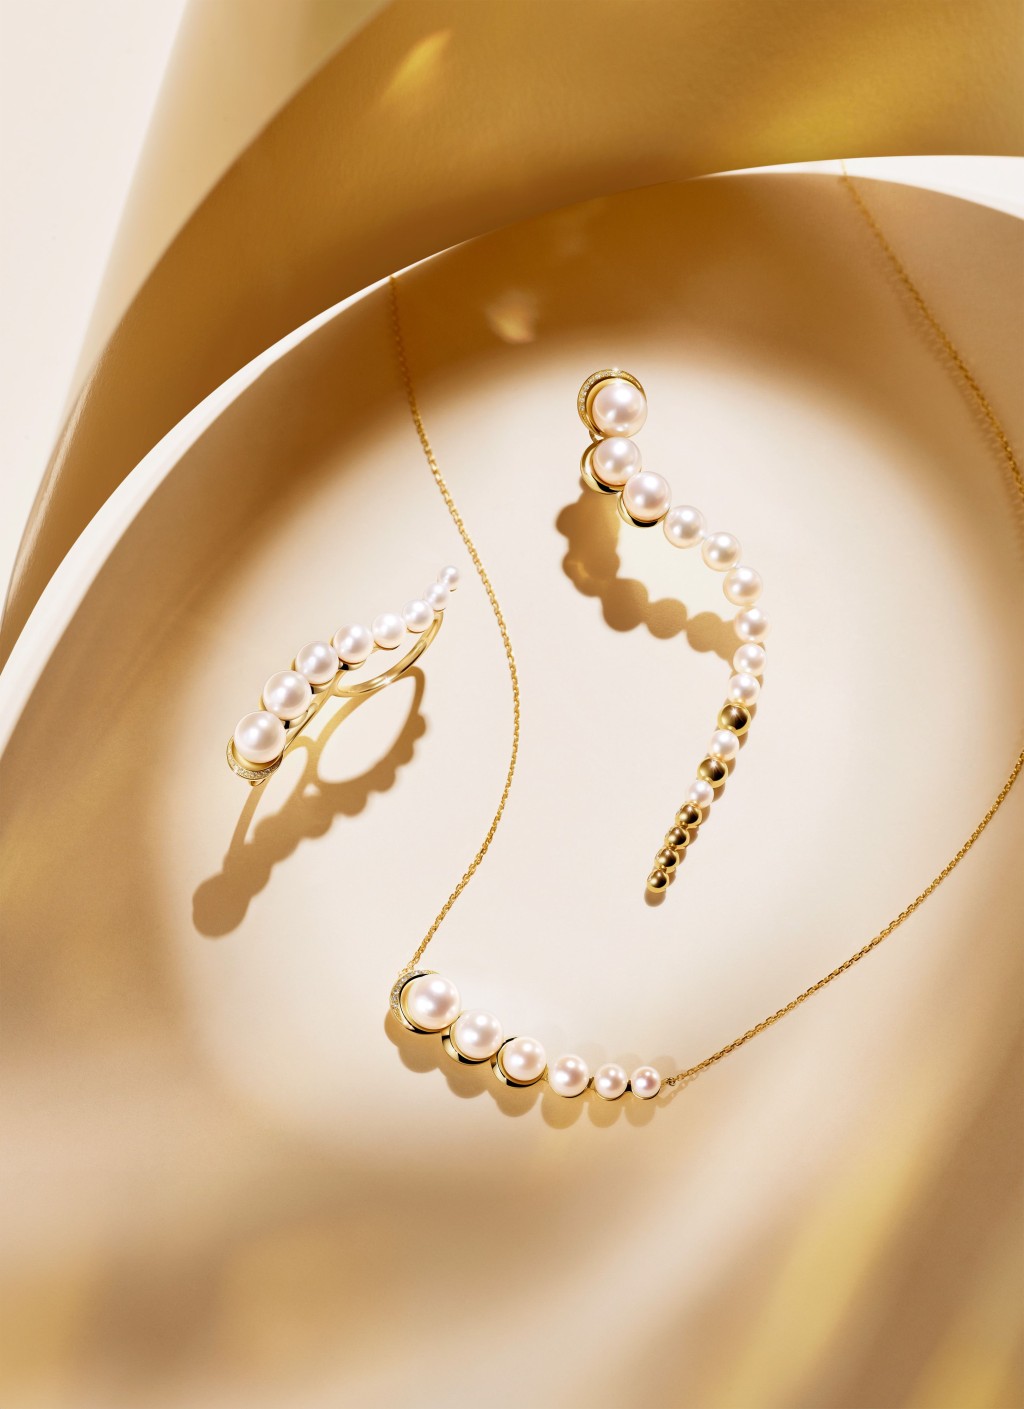 周大福至真系列中的LUNA玥18K黃色黃金美鑽配珍珠首飾。